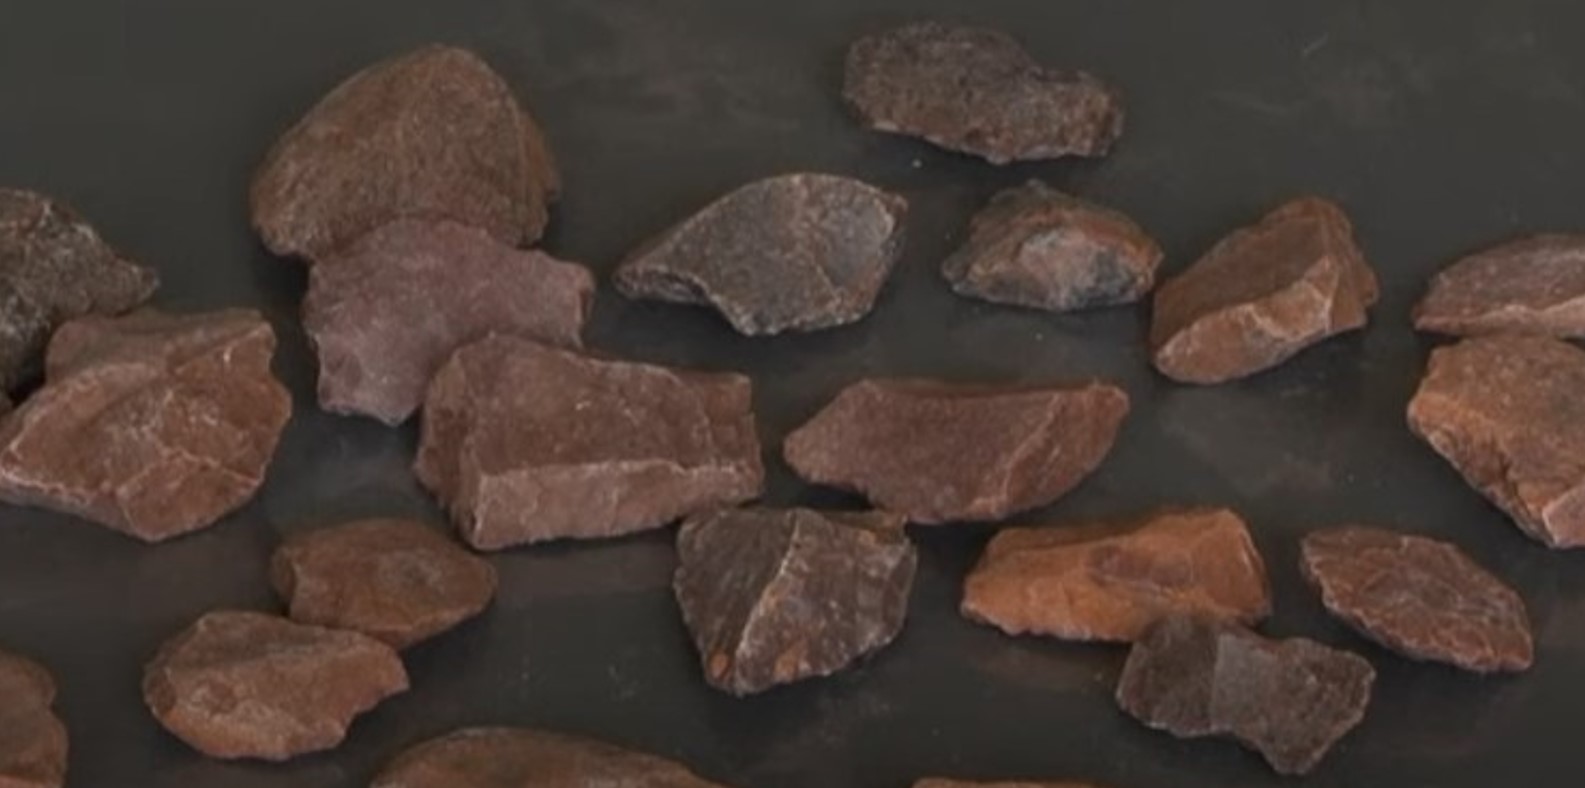 Kenya : découverte d’outils en pierre vieux de 2,9 millions d’années (vidéo) By Jack35 1-27